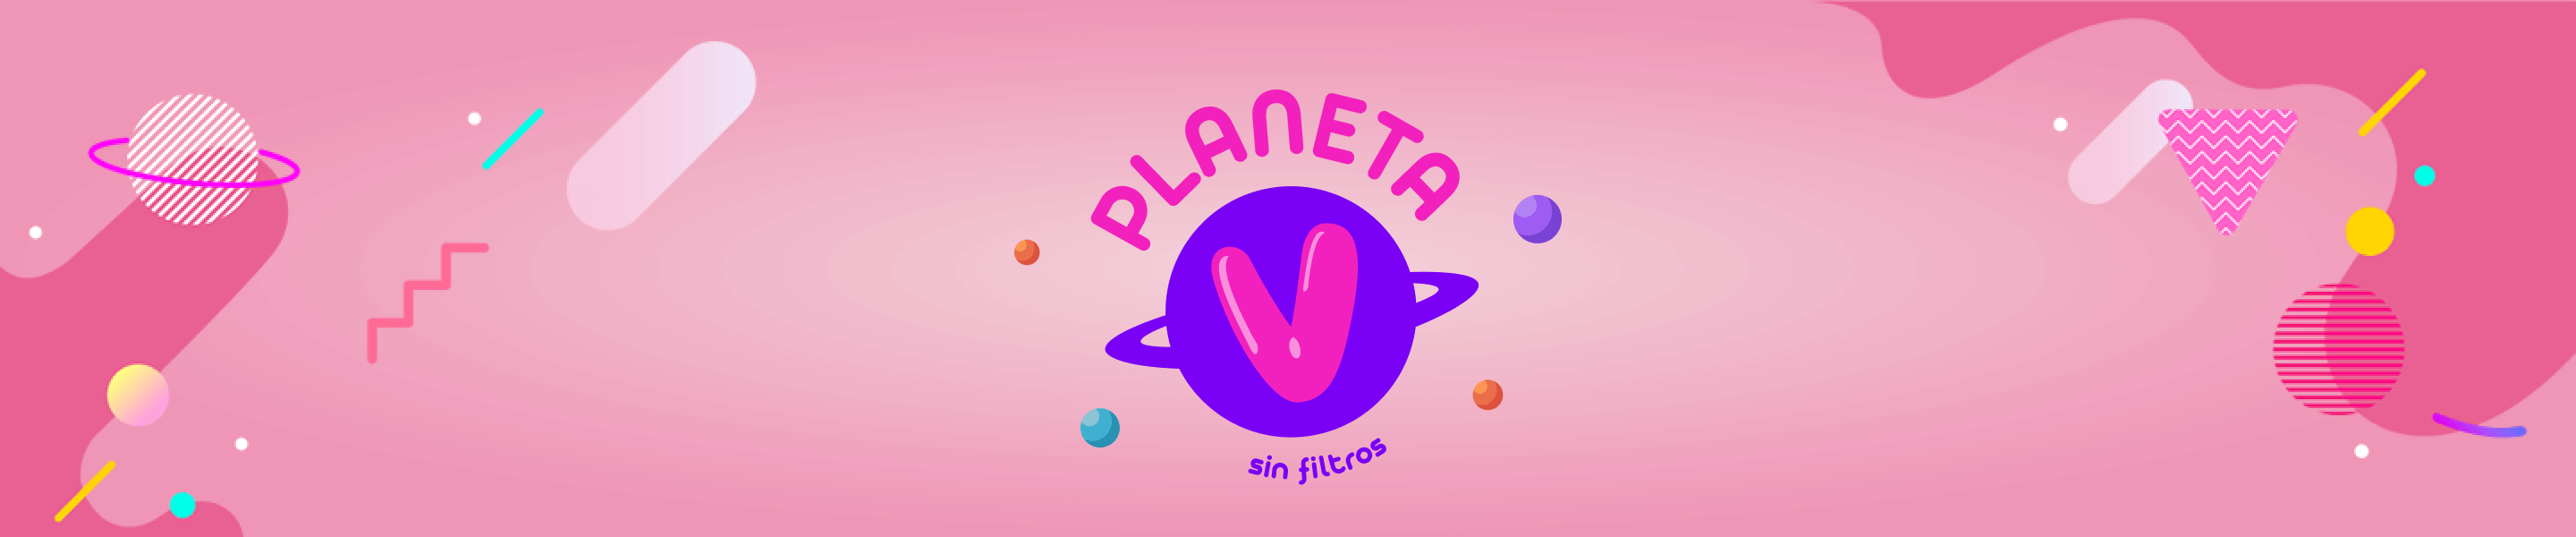 Cabecera planeta V